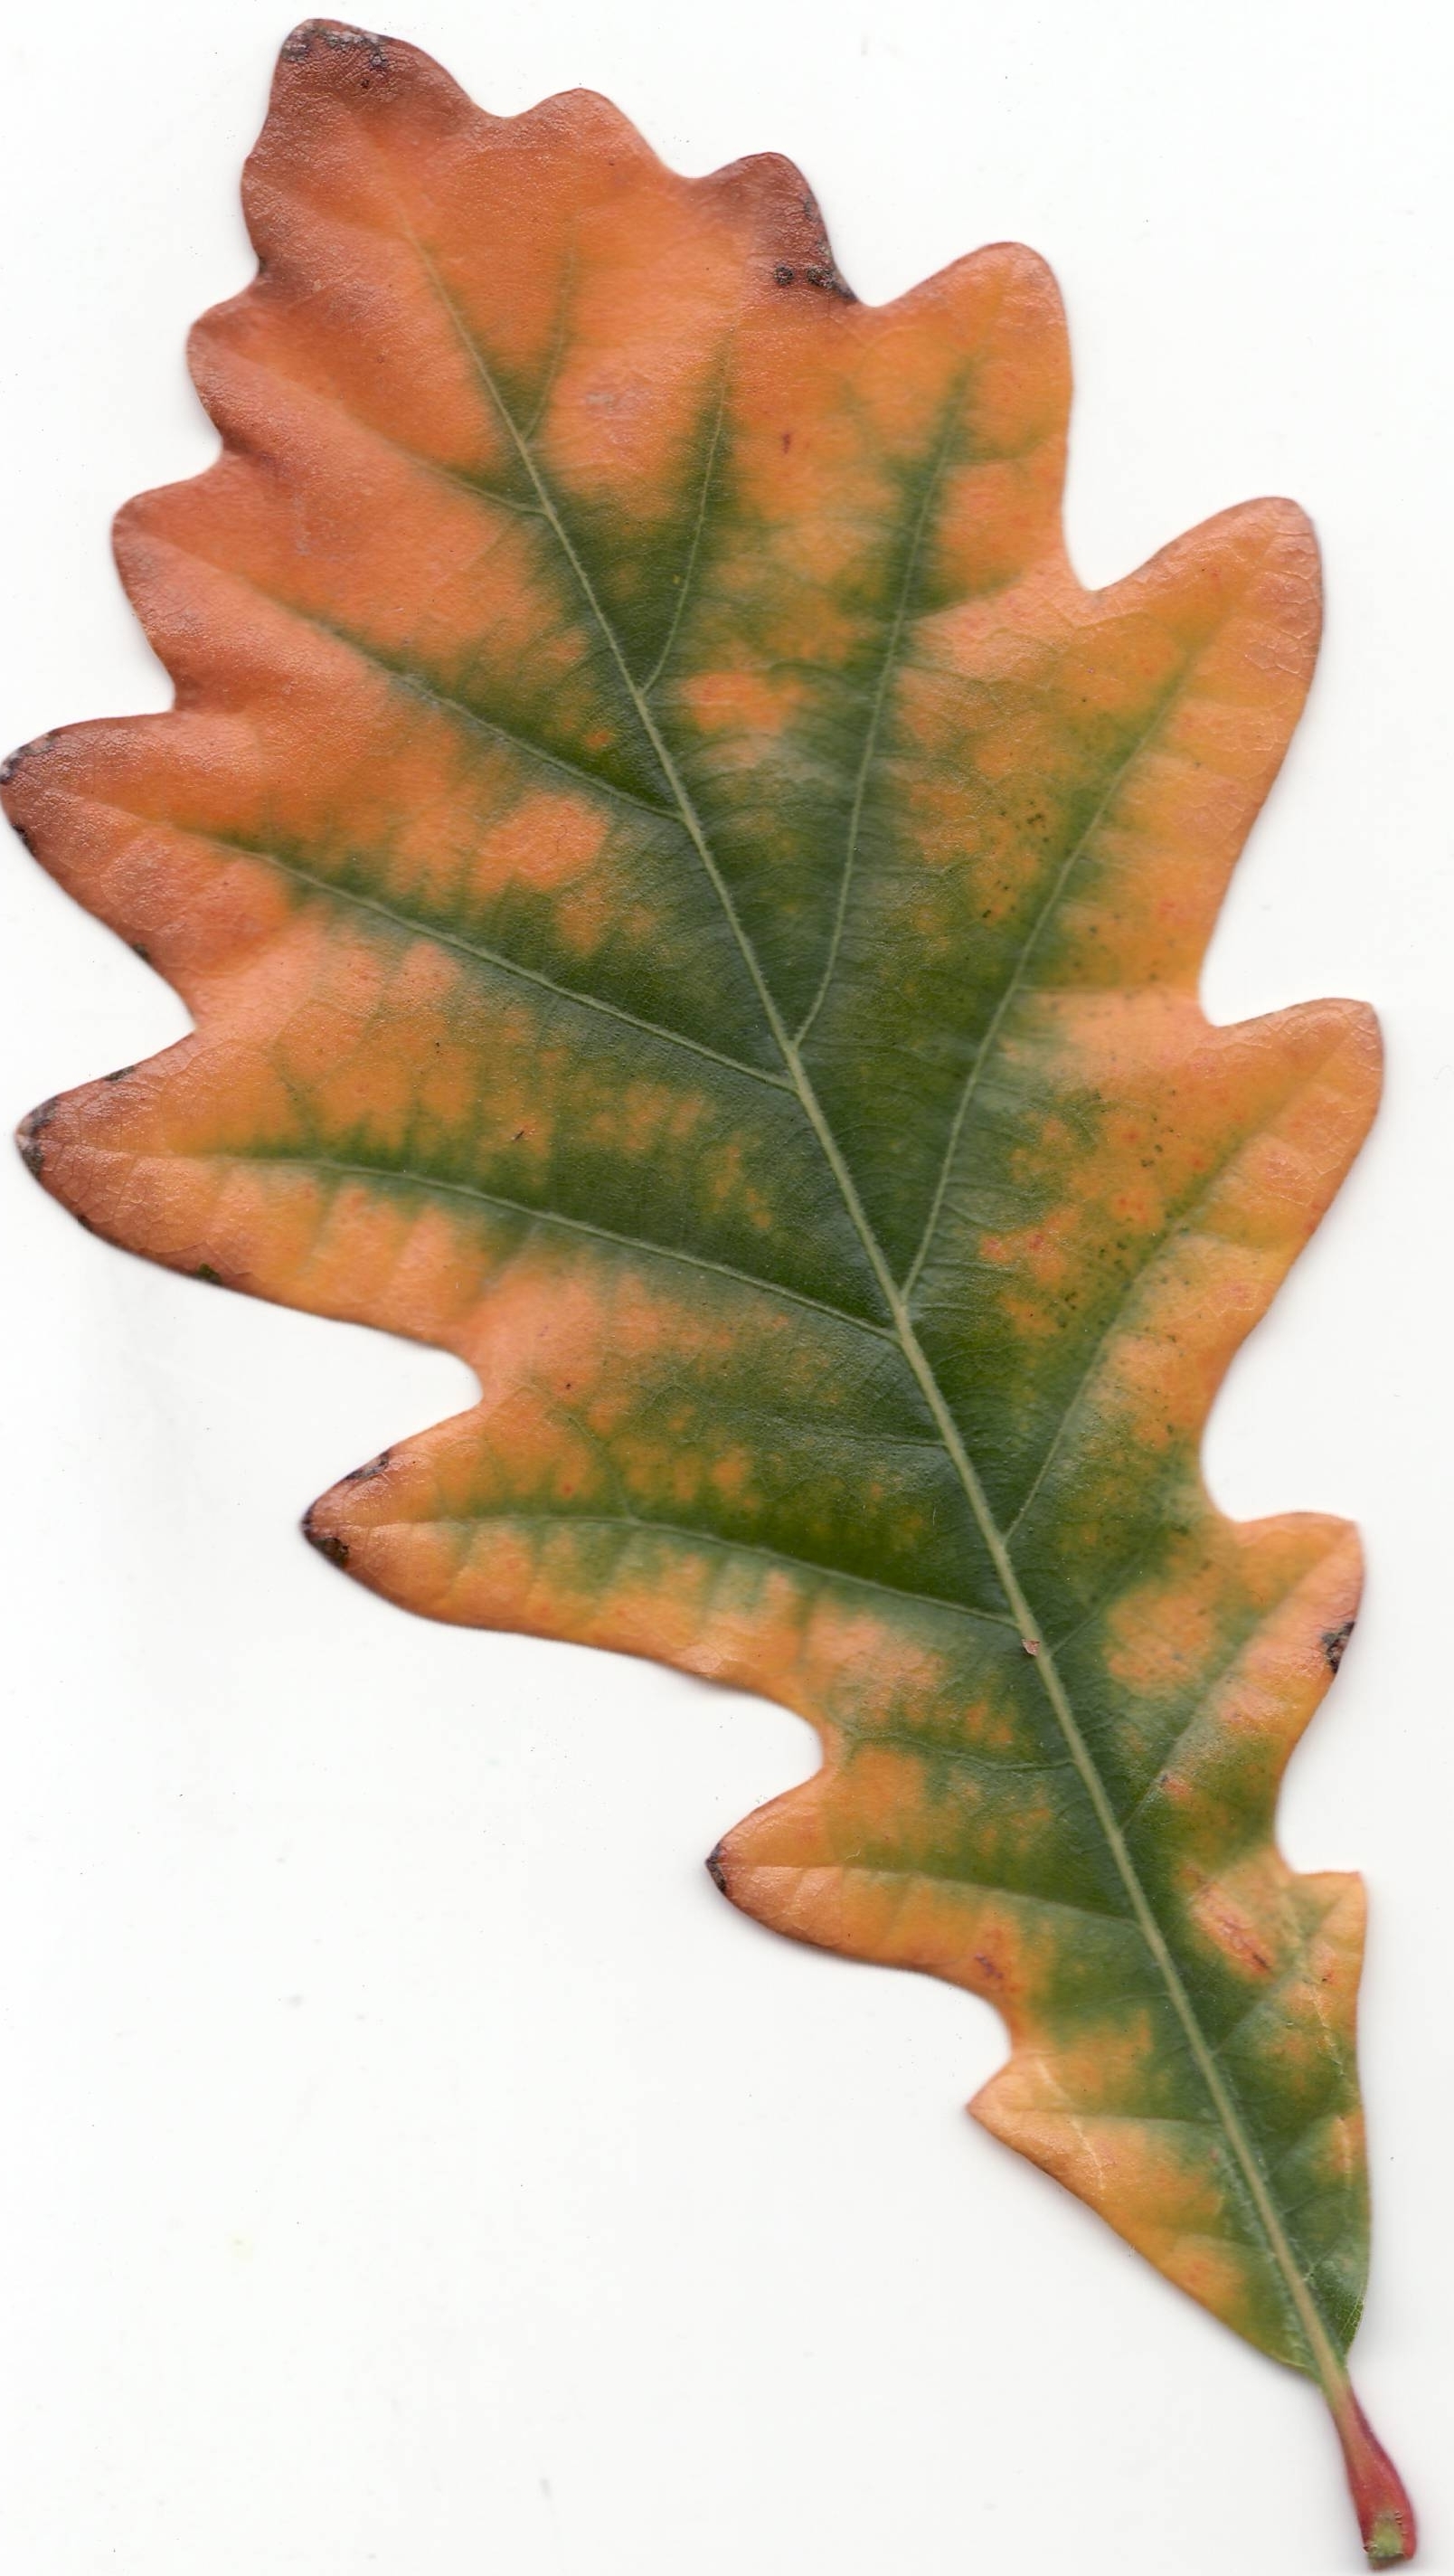 File:Autumn Swamp White Oak Leaf.jpg - Wikimedia Commons